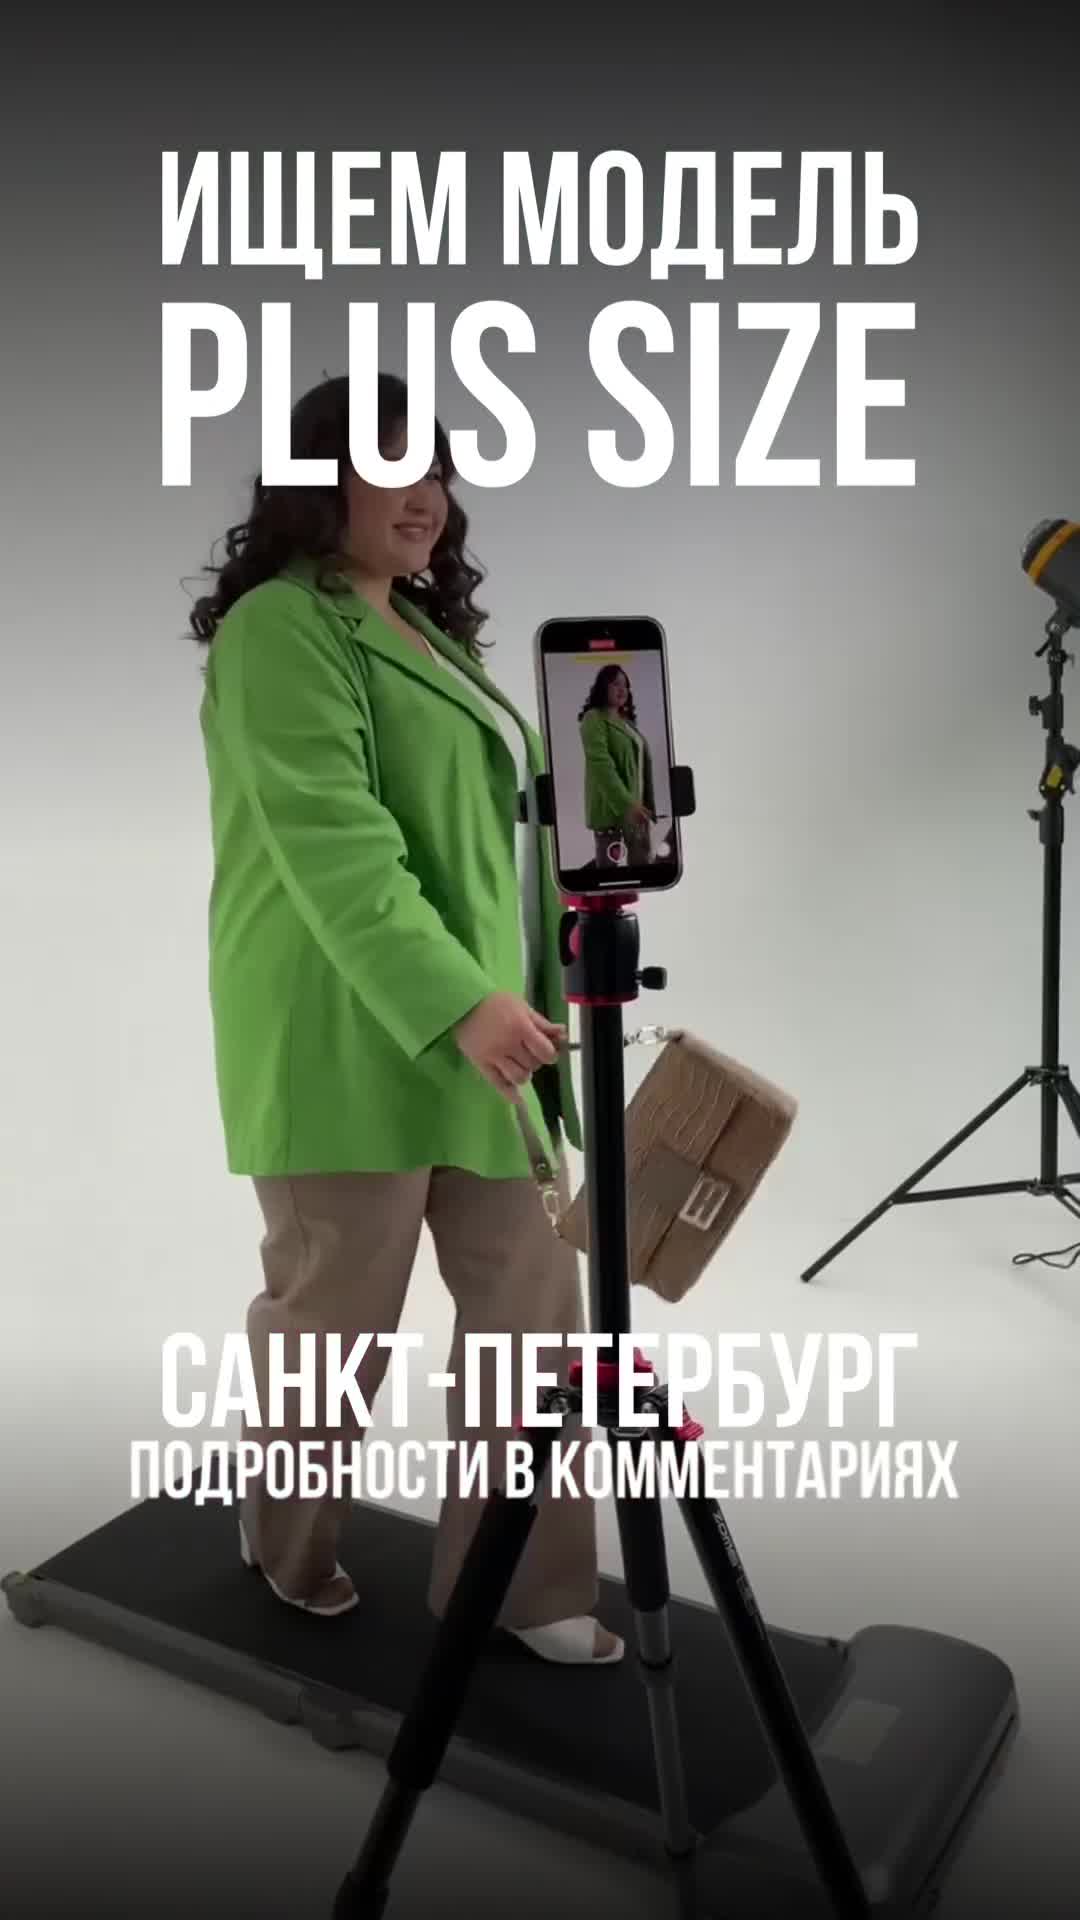 Бренд @naturaxl.ru в поисках модели plus size на примерку экспериментальных образцов одежды.